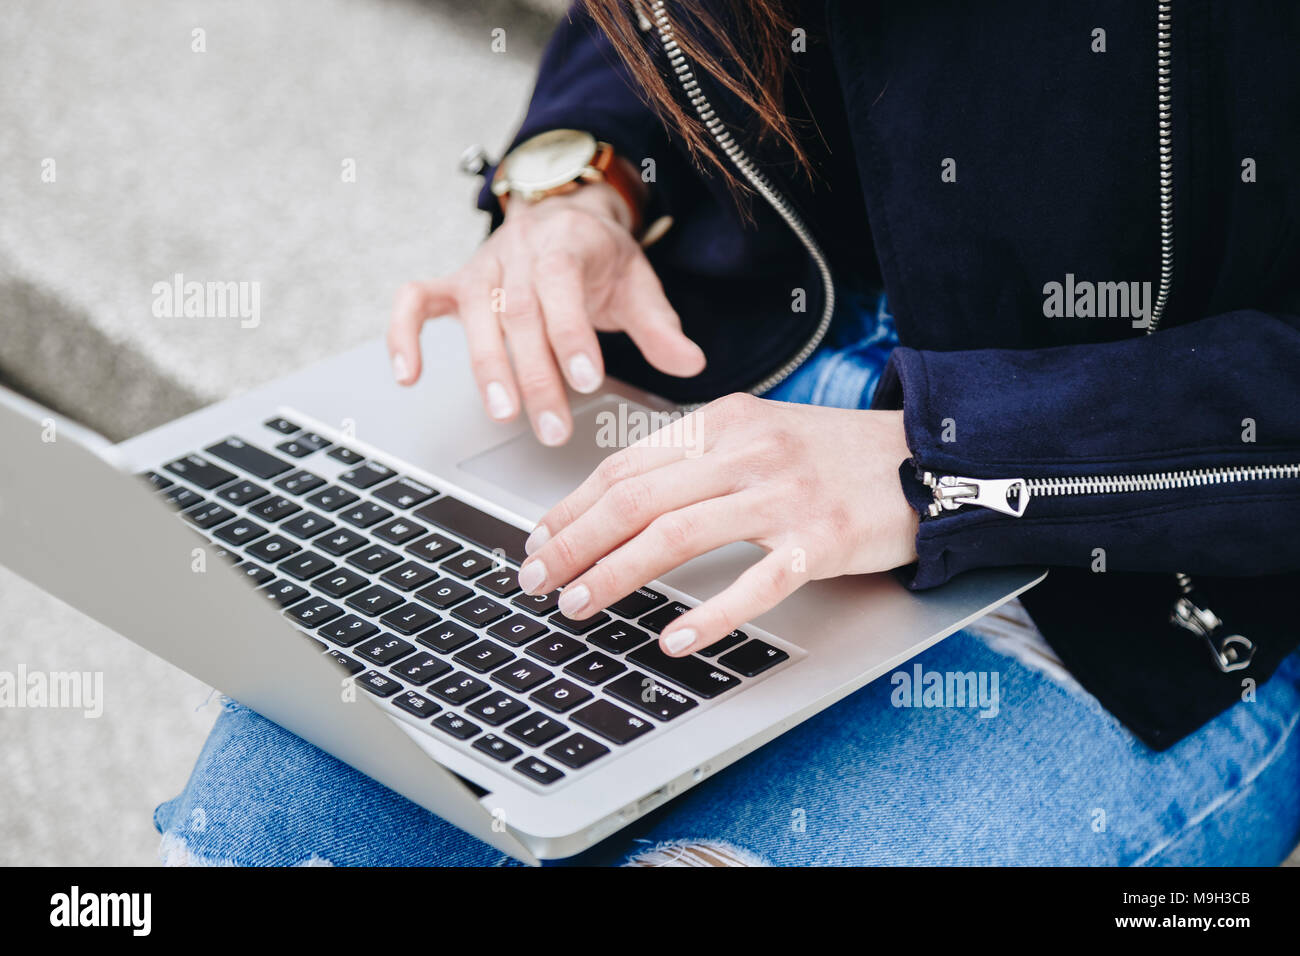 Junge und attraktive Mode blogger Schreiben einer neuen Blog-Eintrag auf Ihrem Laptop. attraktive Frau mit der pc im Freien, das Tragen einer Armbanduhr. Stockfoto